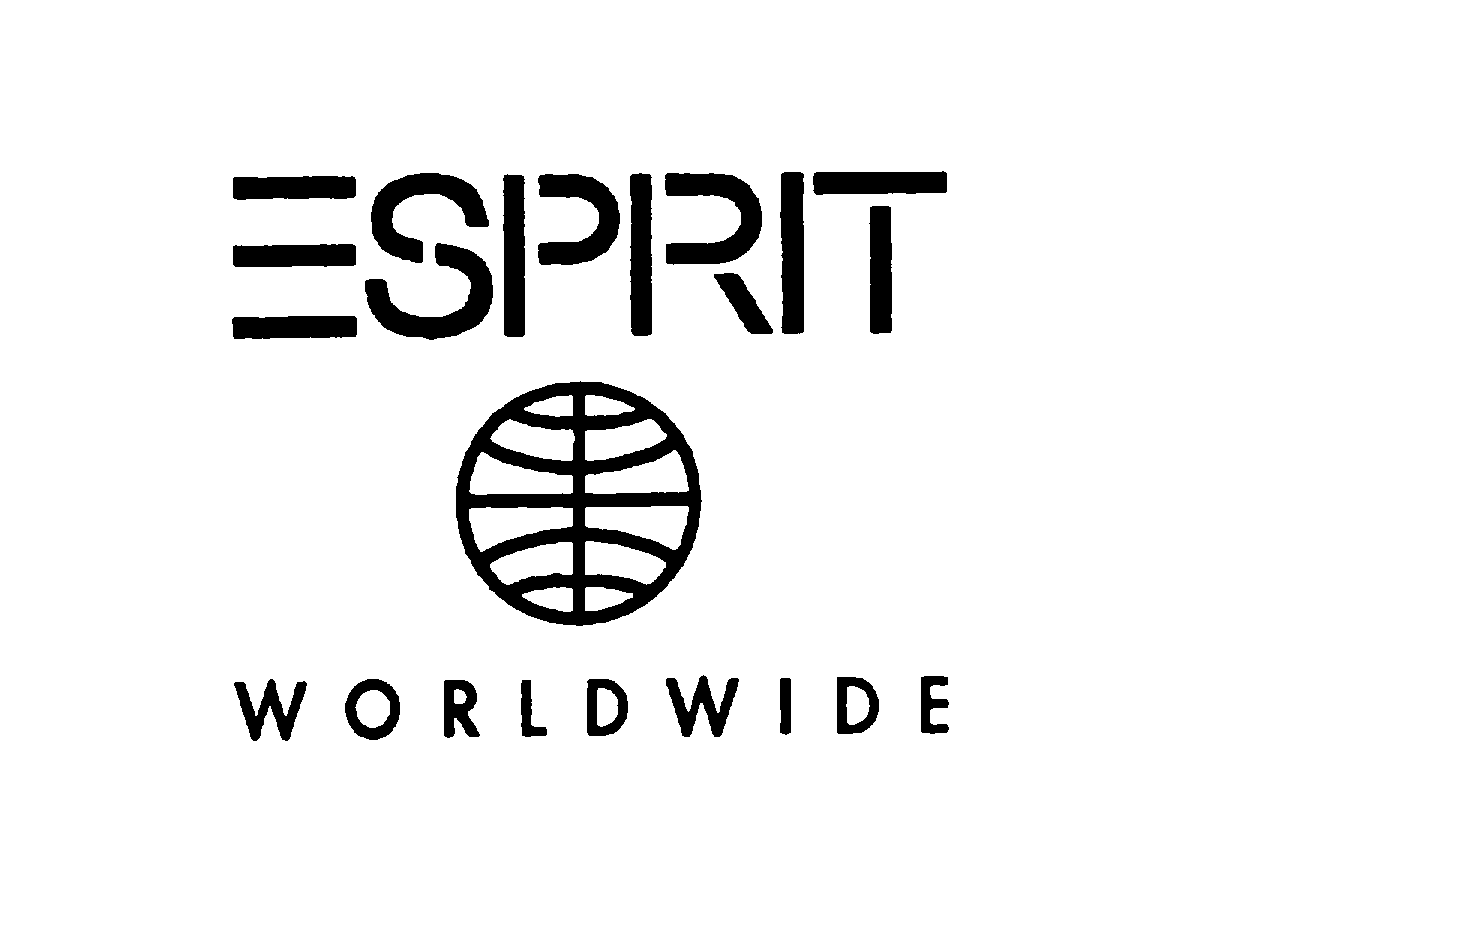  ESPRIT WORLDWIDE